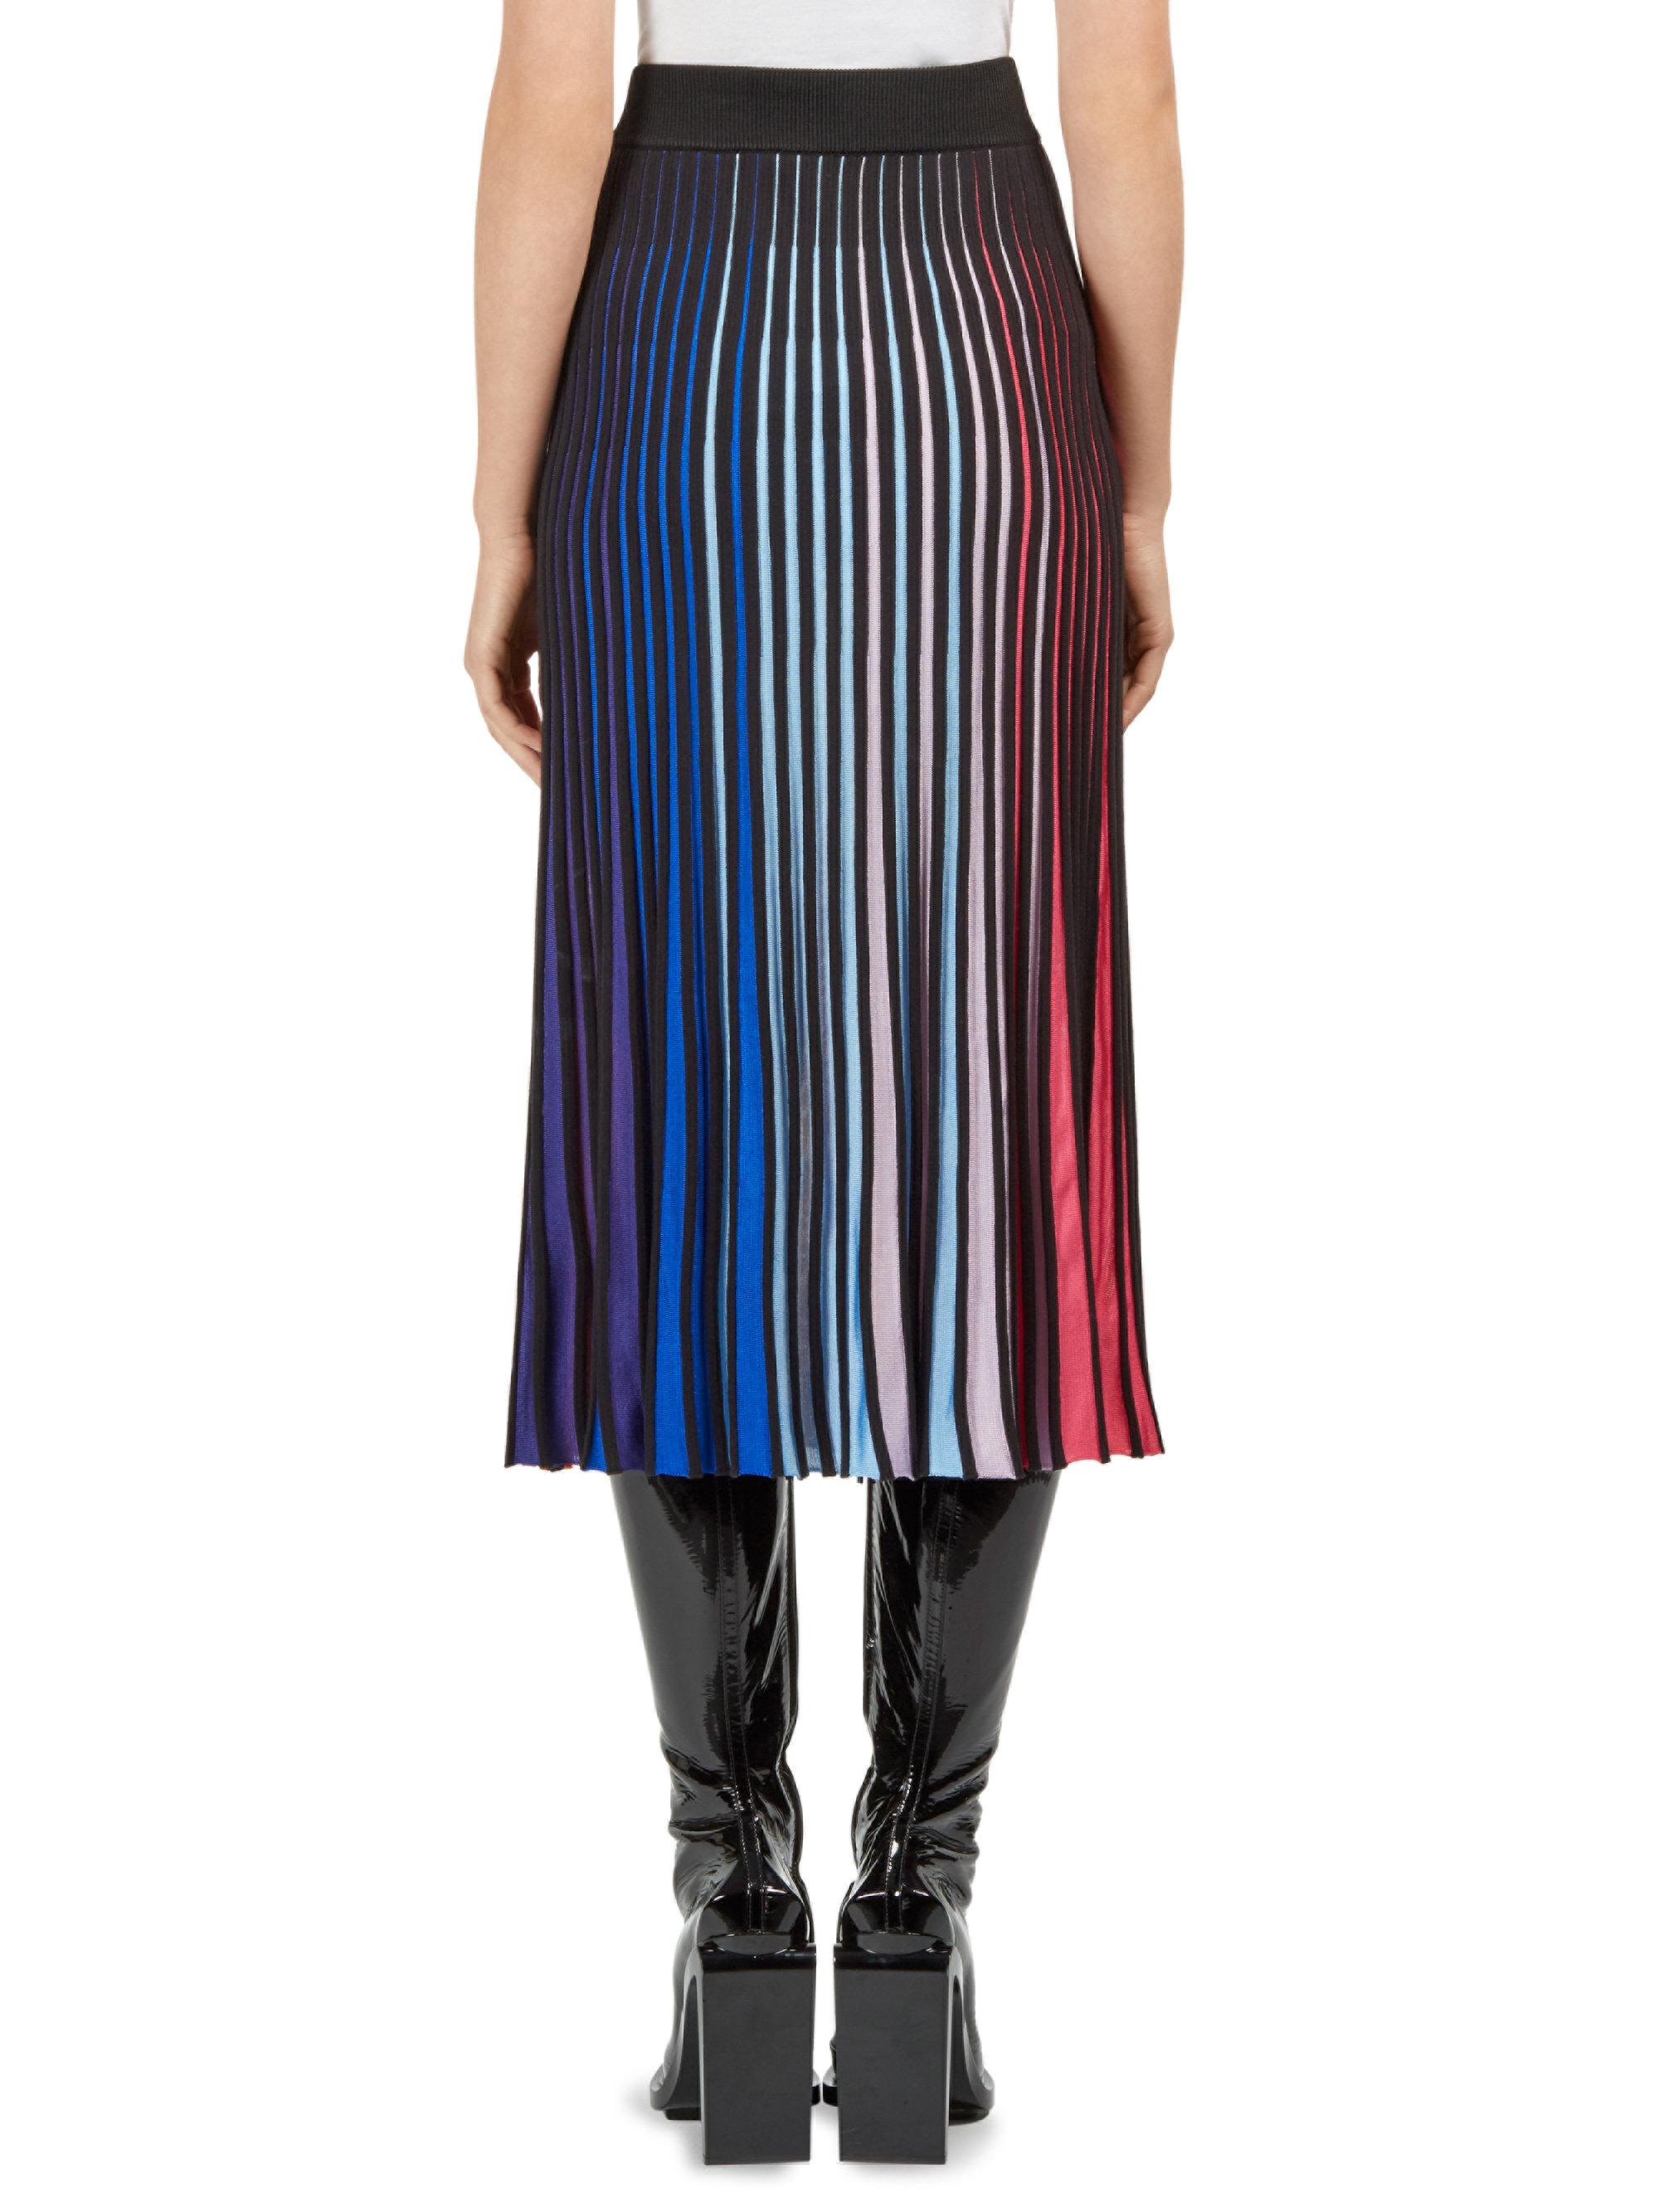 Lyst - Kenzo Striped Rib-knit Midi Skirt